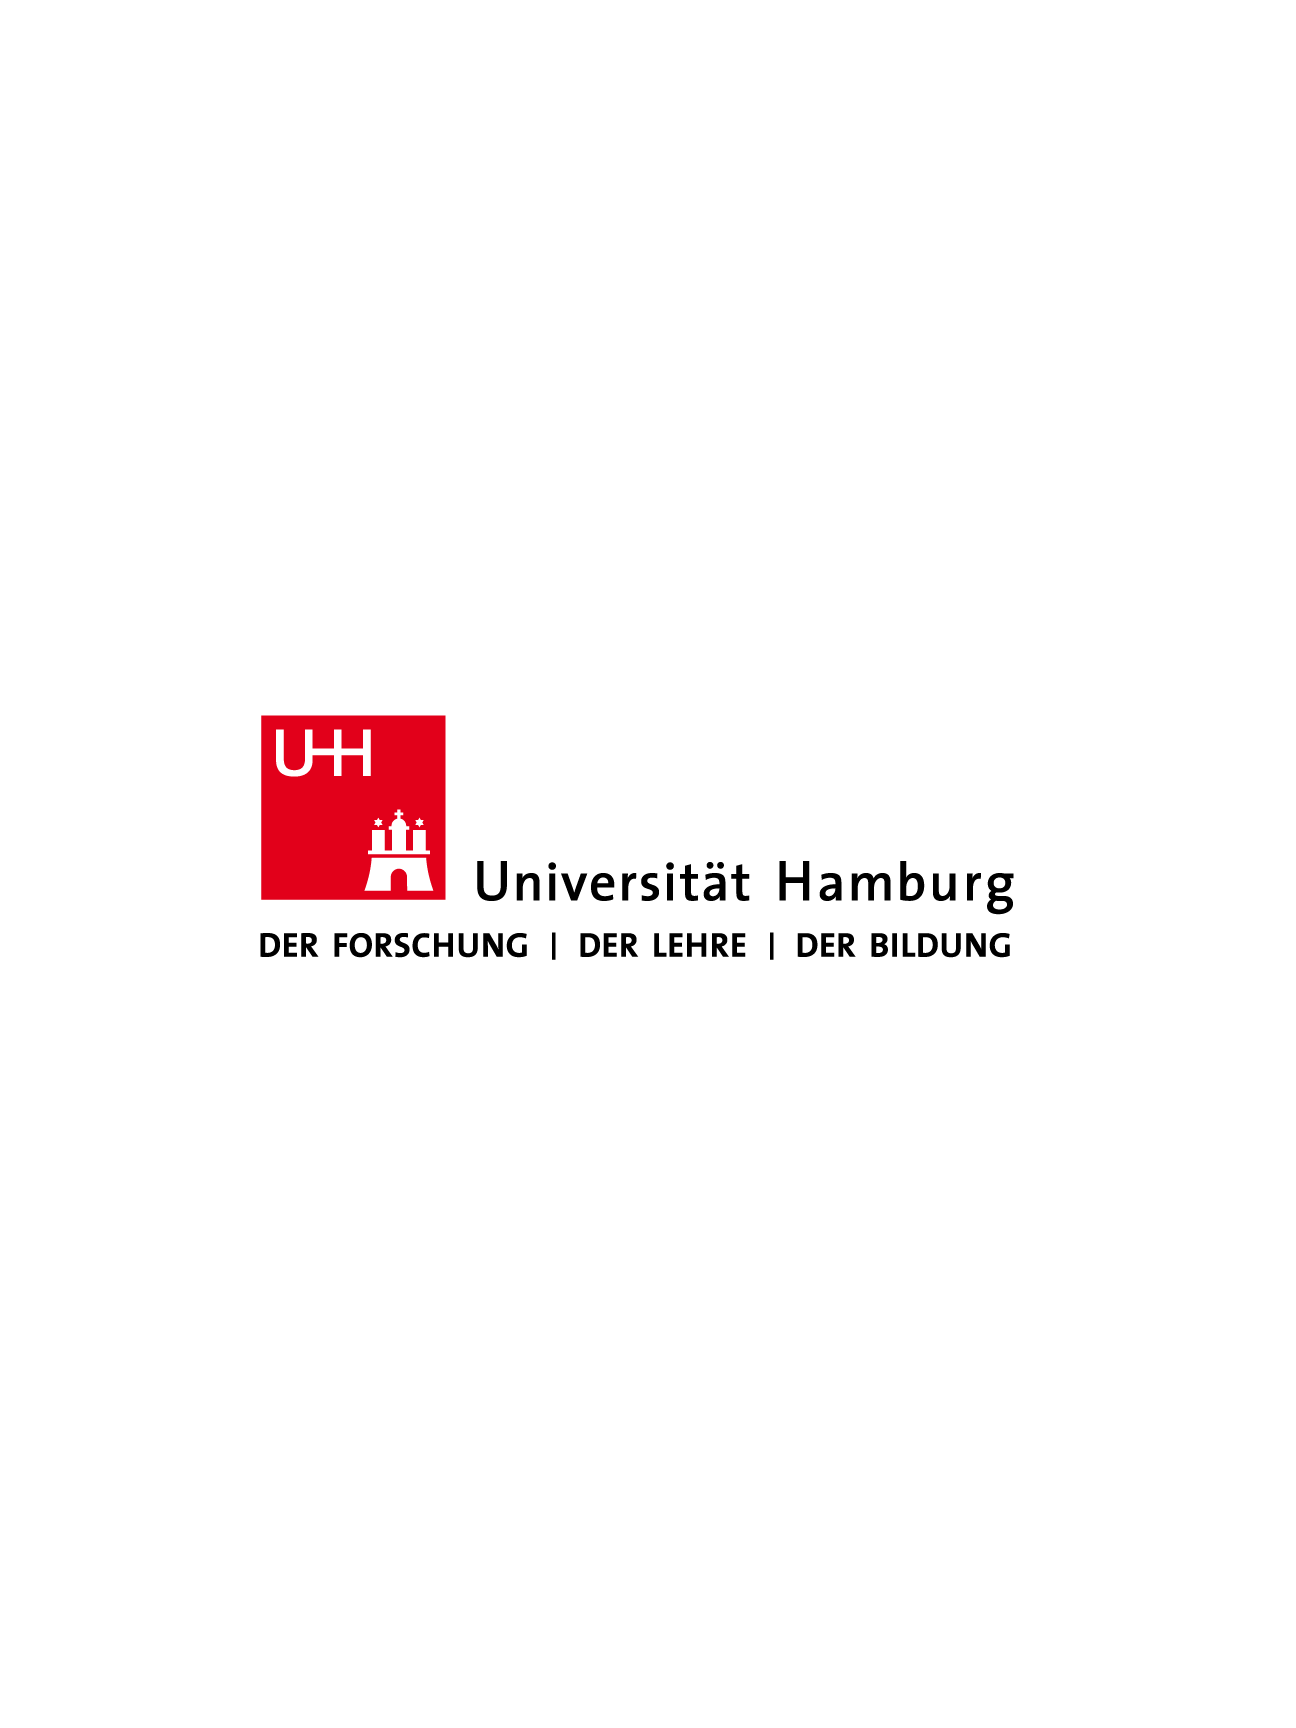 UHamburg logo